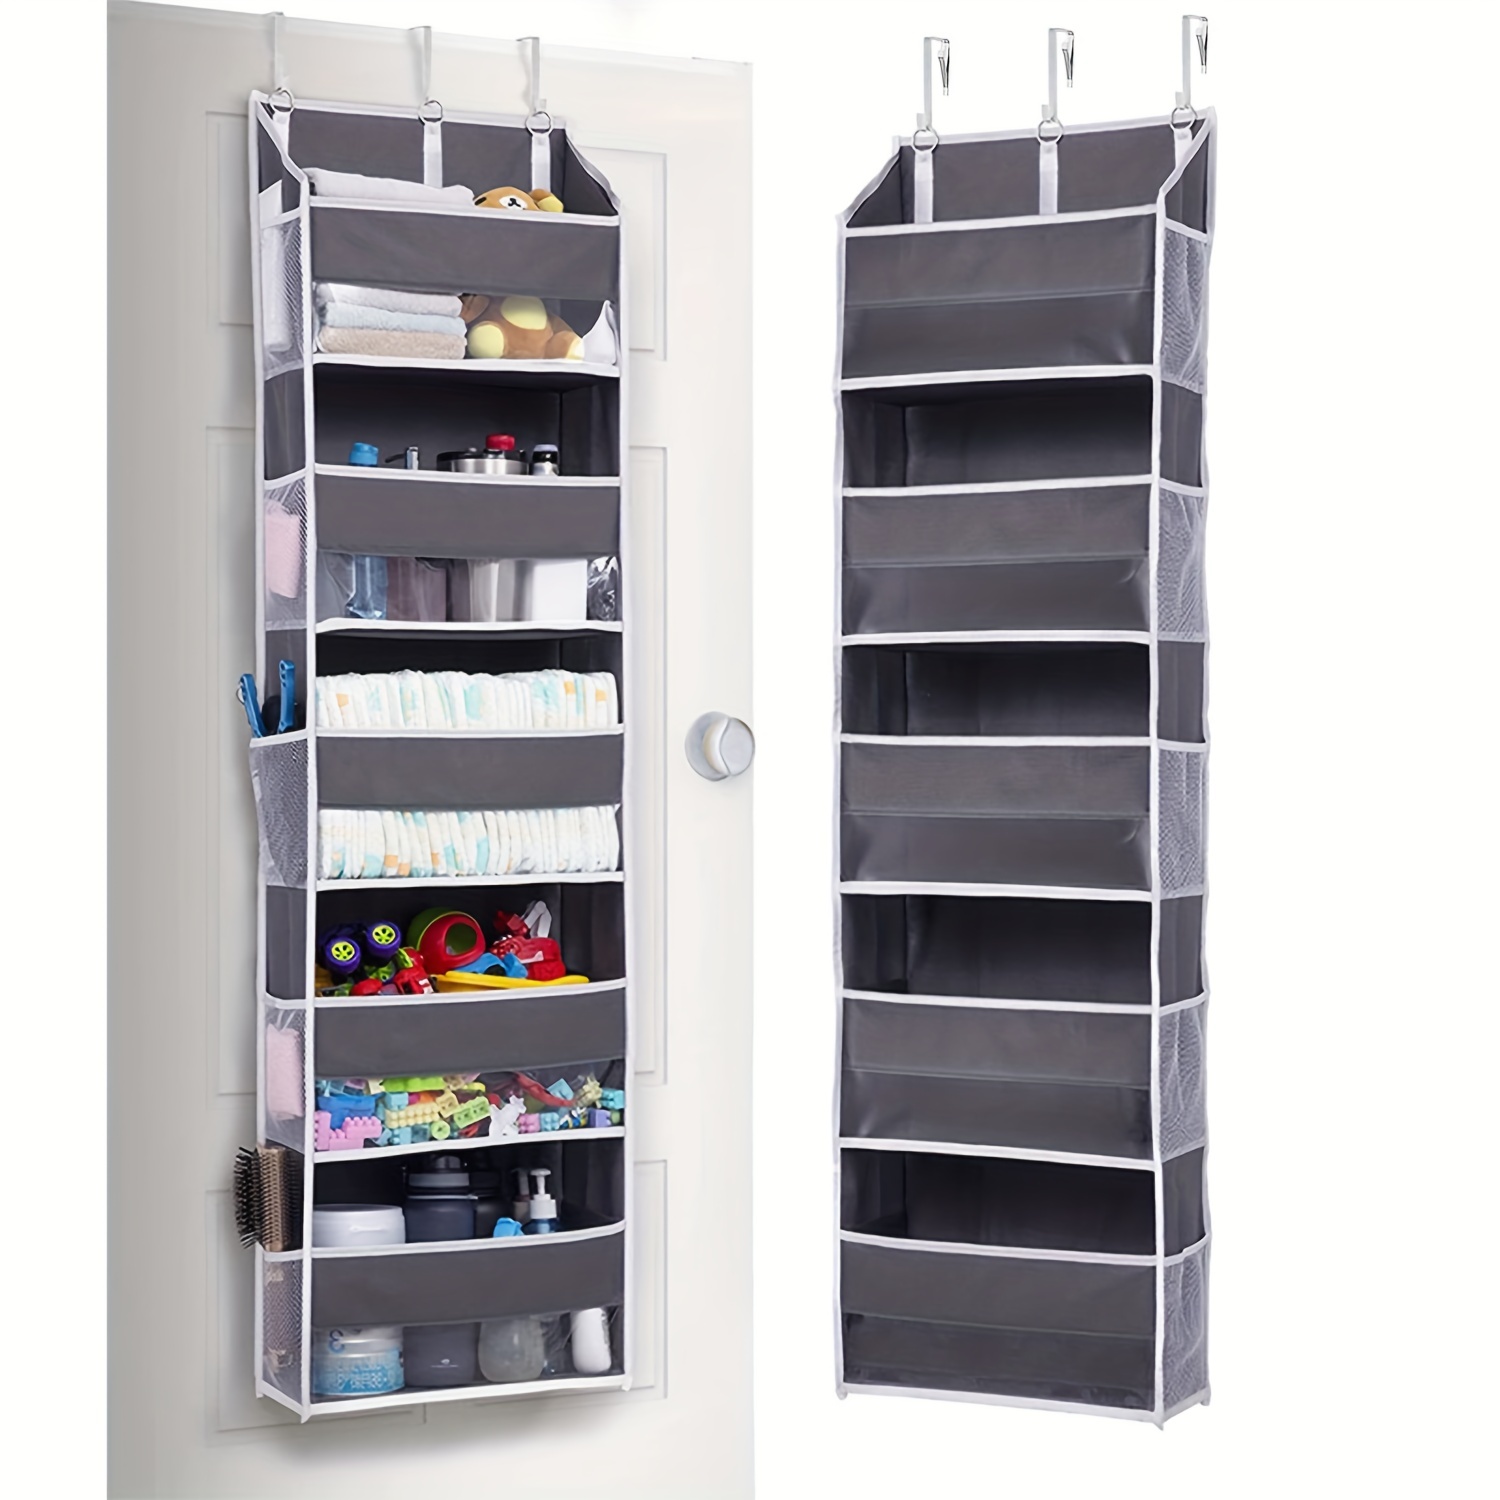 Store More with These Behind-the-Door Storage Ideas  Decoración de unas,  Almacenamiento y organización, Almacenamiento pegboard